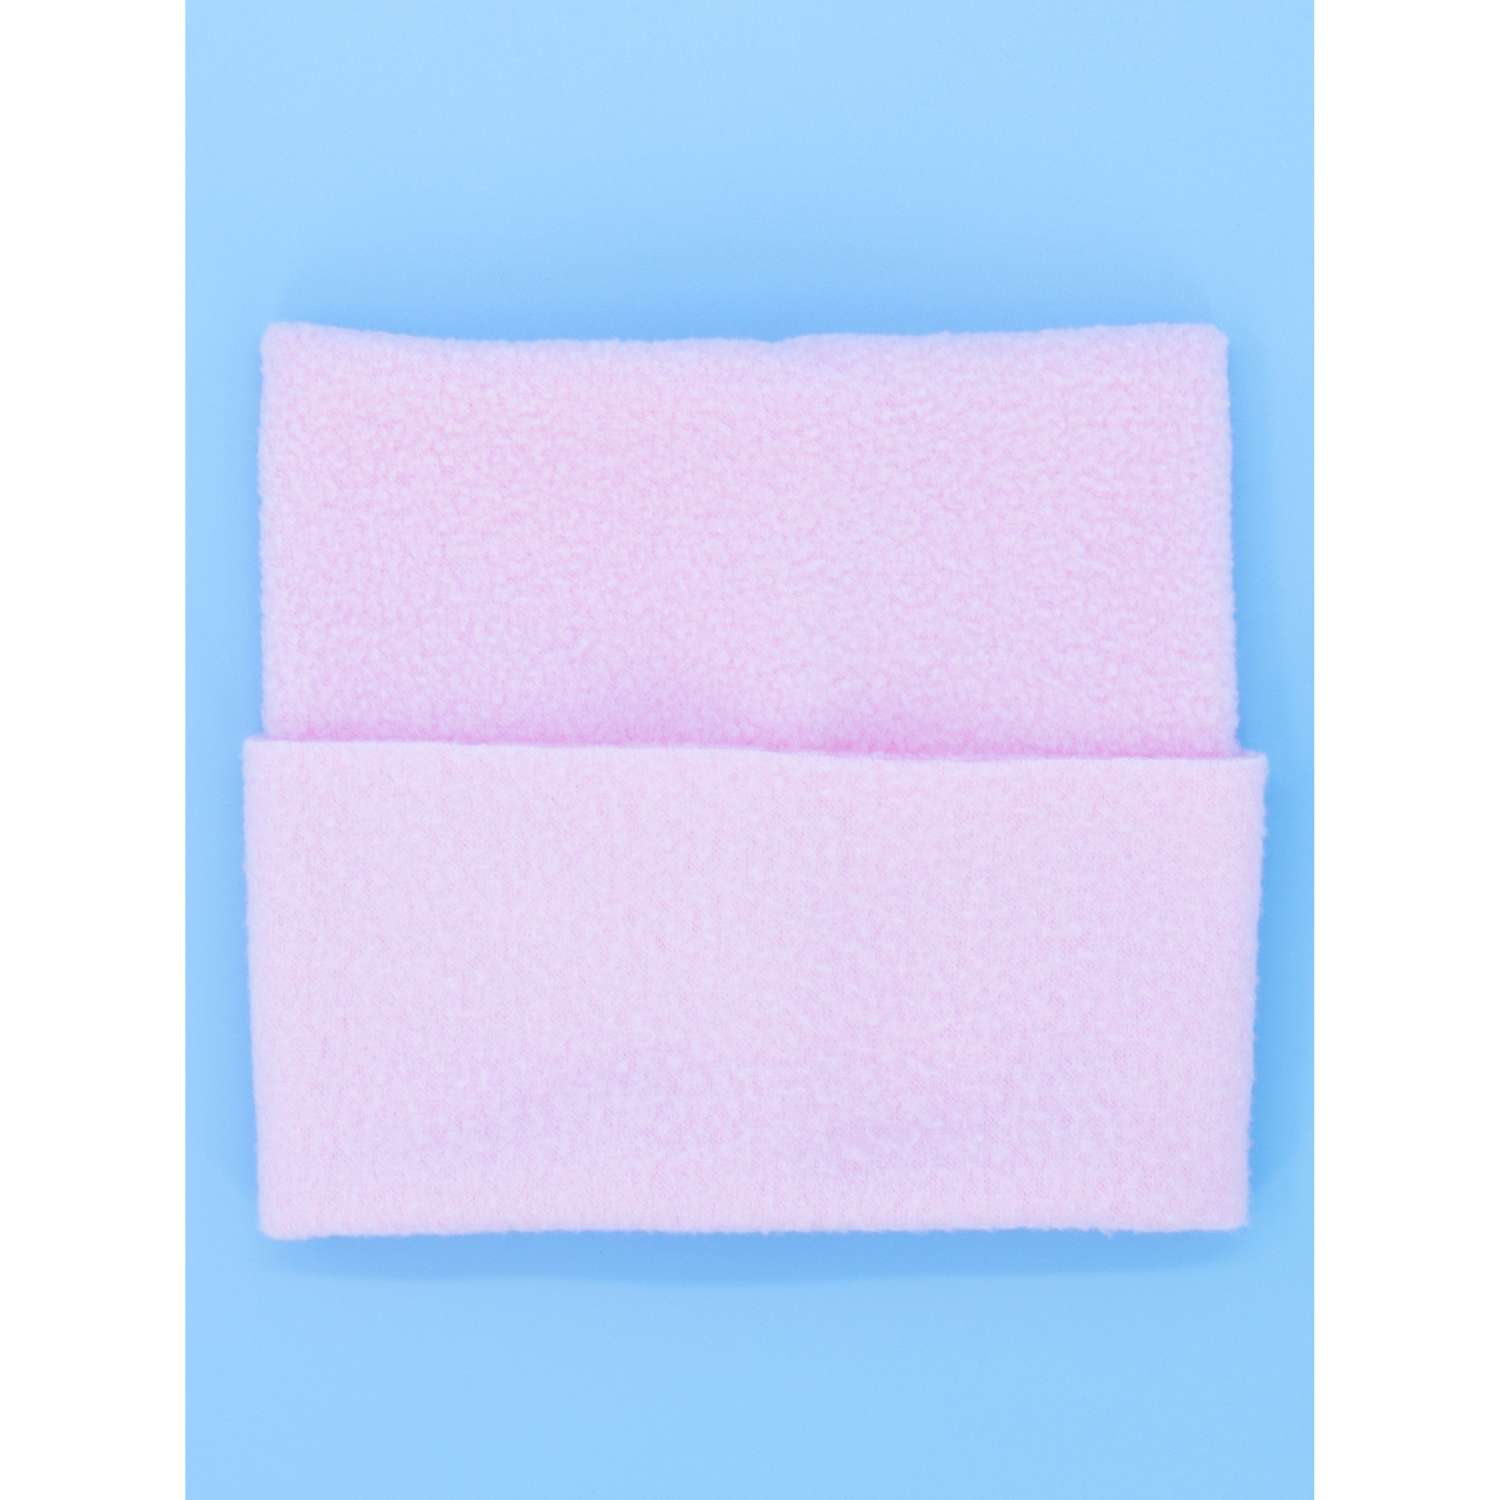 Комплект одежды Модница для пупса 43-48 см 6120 малиновый-розовый 6120малиновый-розовый - фото 10